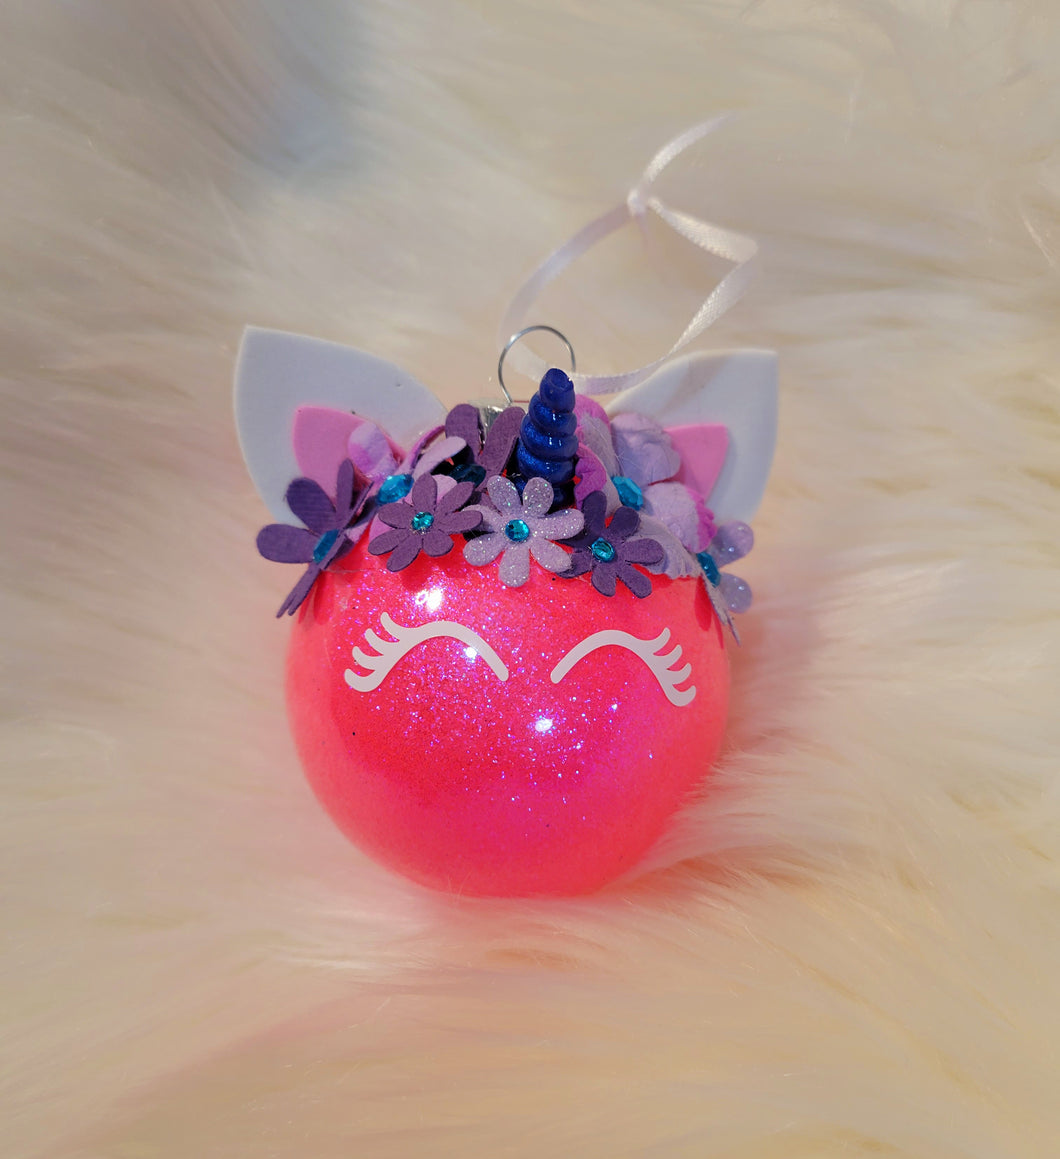 Unicorn ornament